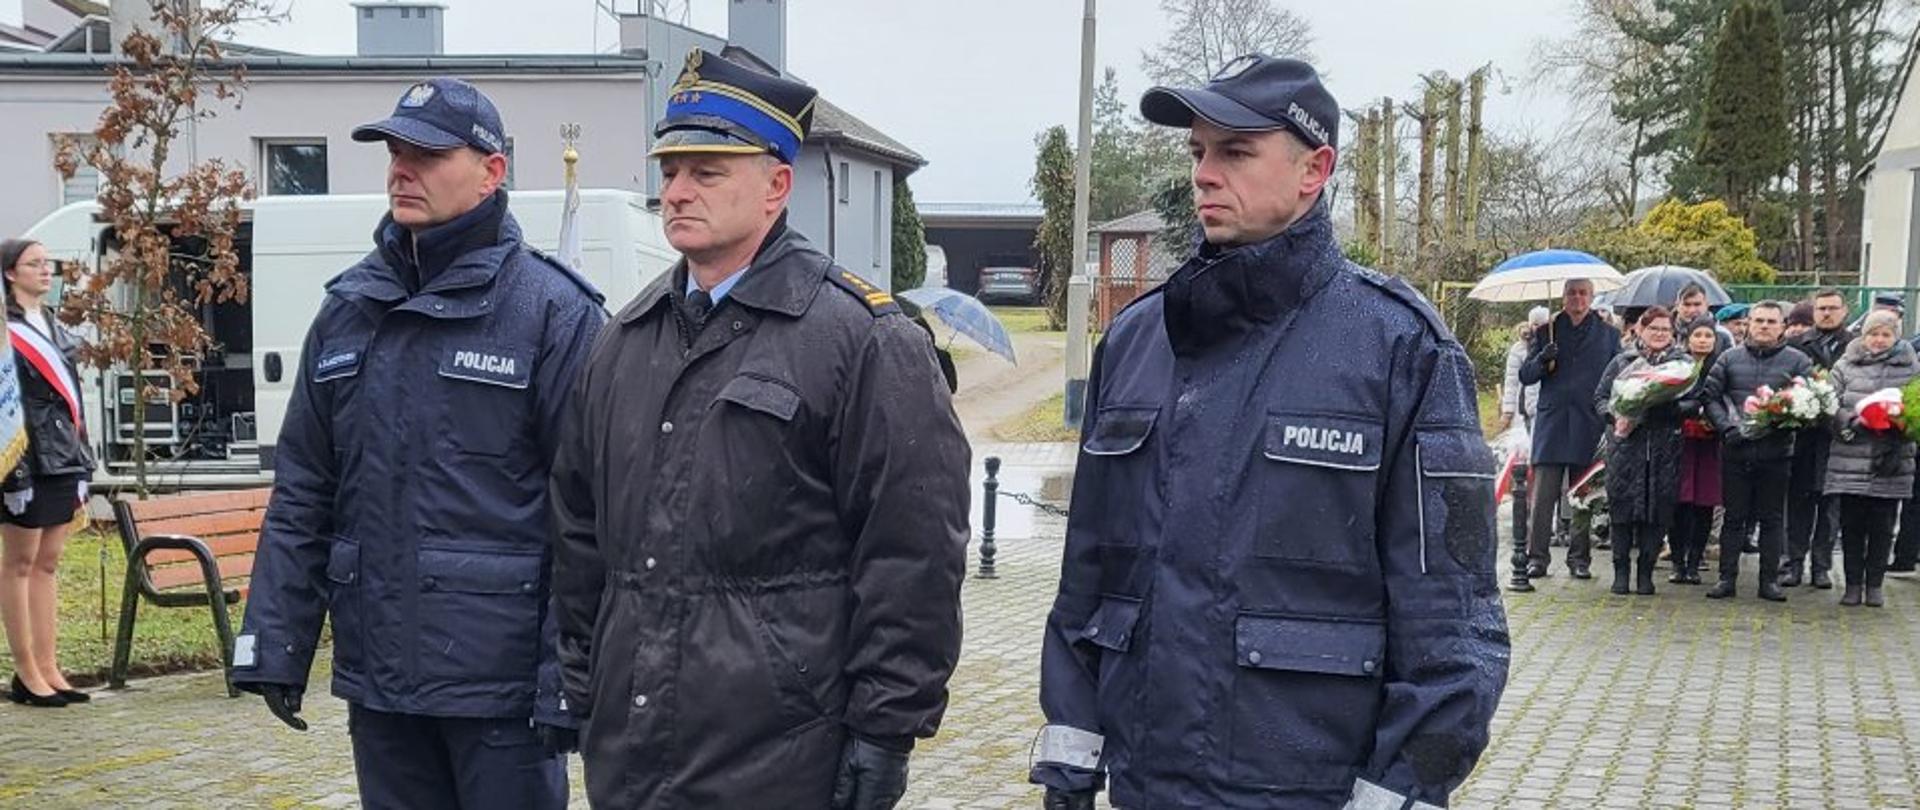 Na zdjęciu zastępca komendanta PSP w Złotowie wraz z Policjantami